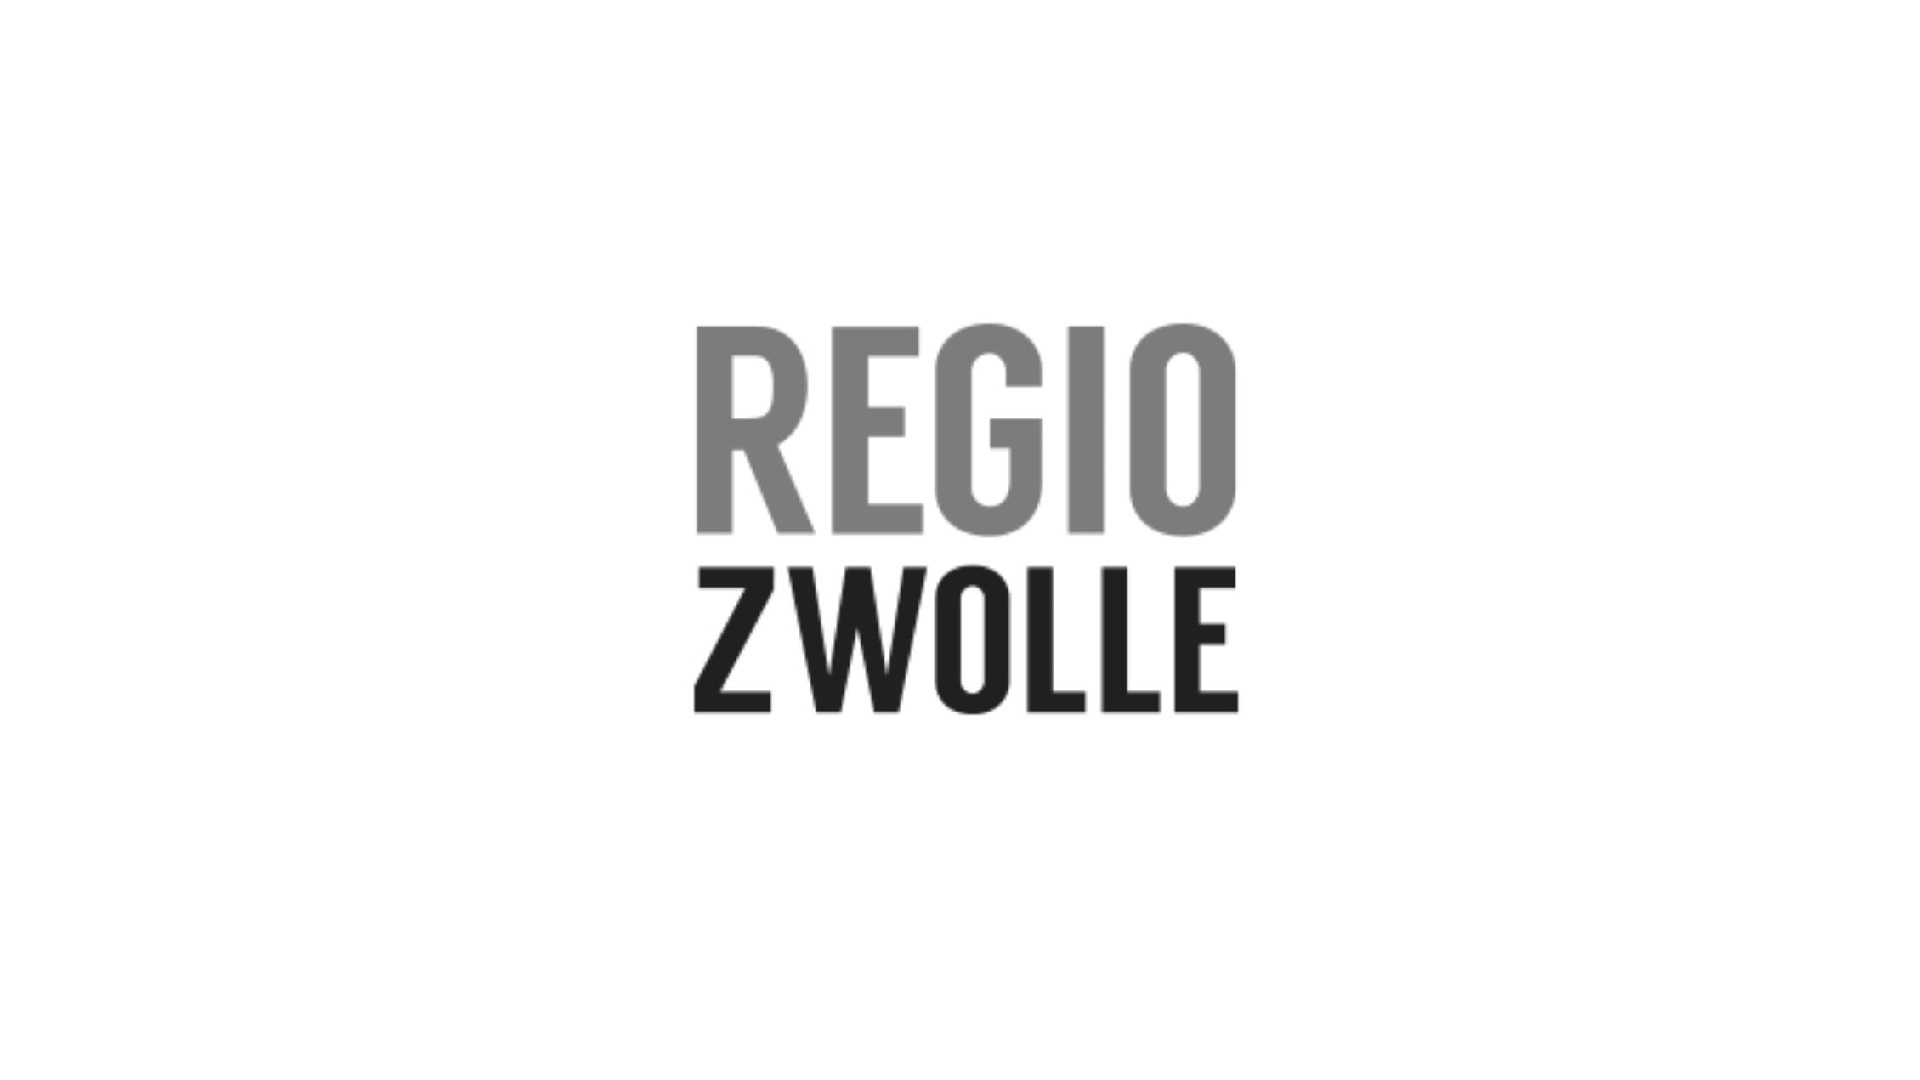 Regio-Zwolle-uitgelichte-afbeelding-3 - kopie - kopie